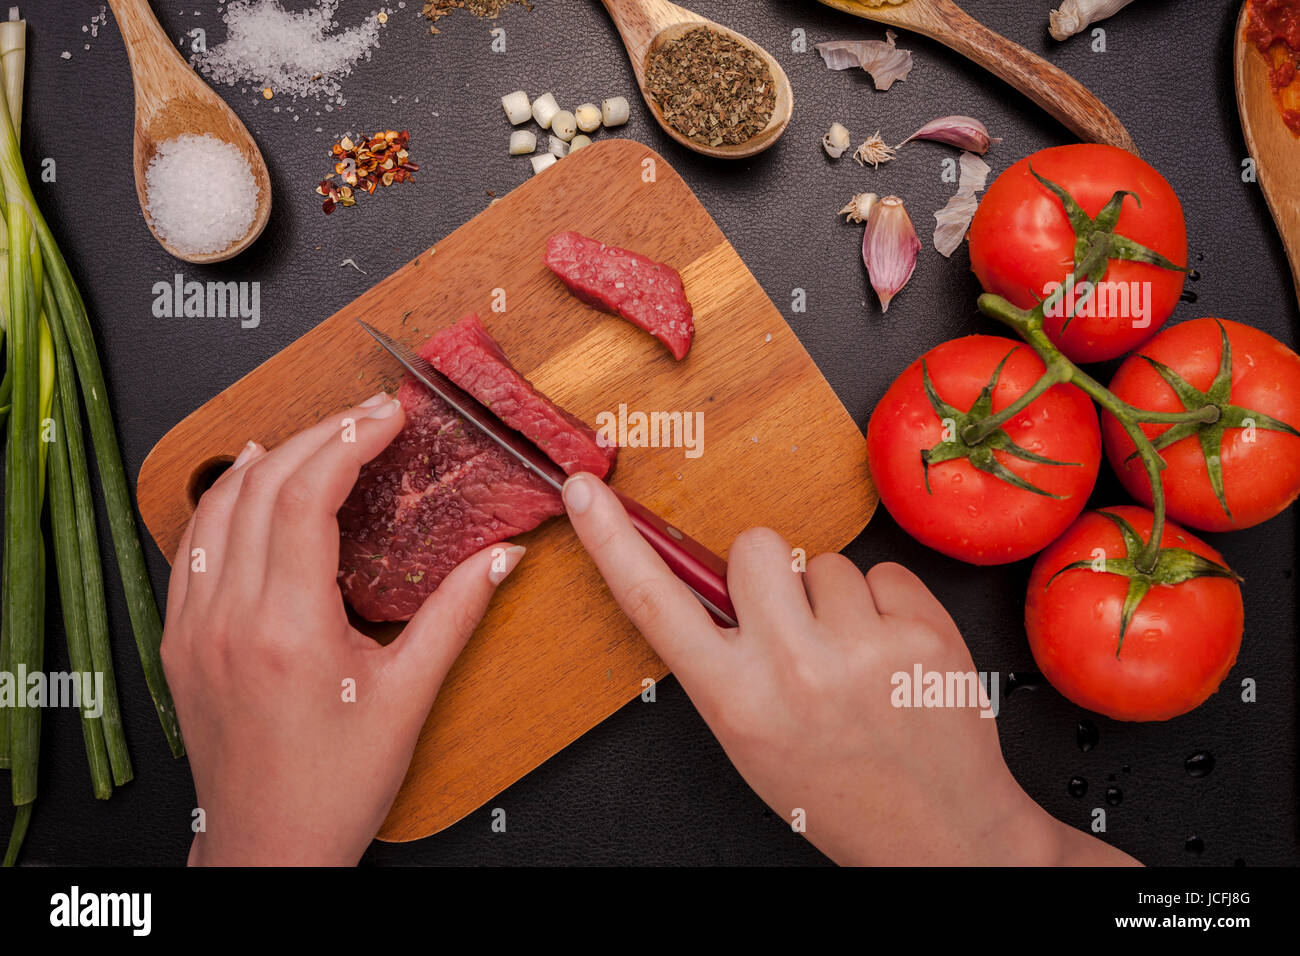 Ein Overhead Foto einer Person, die ein Stück rohes Steak mit Gemüse und anderen Zutaten schneiden. Stockfoto